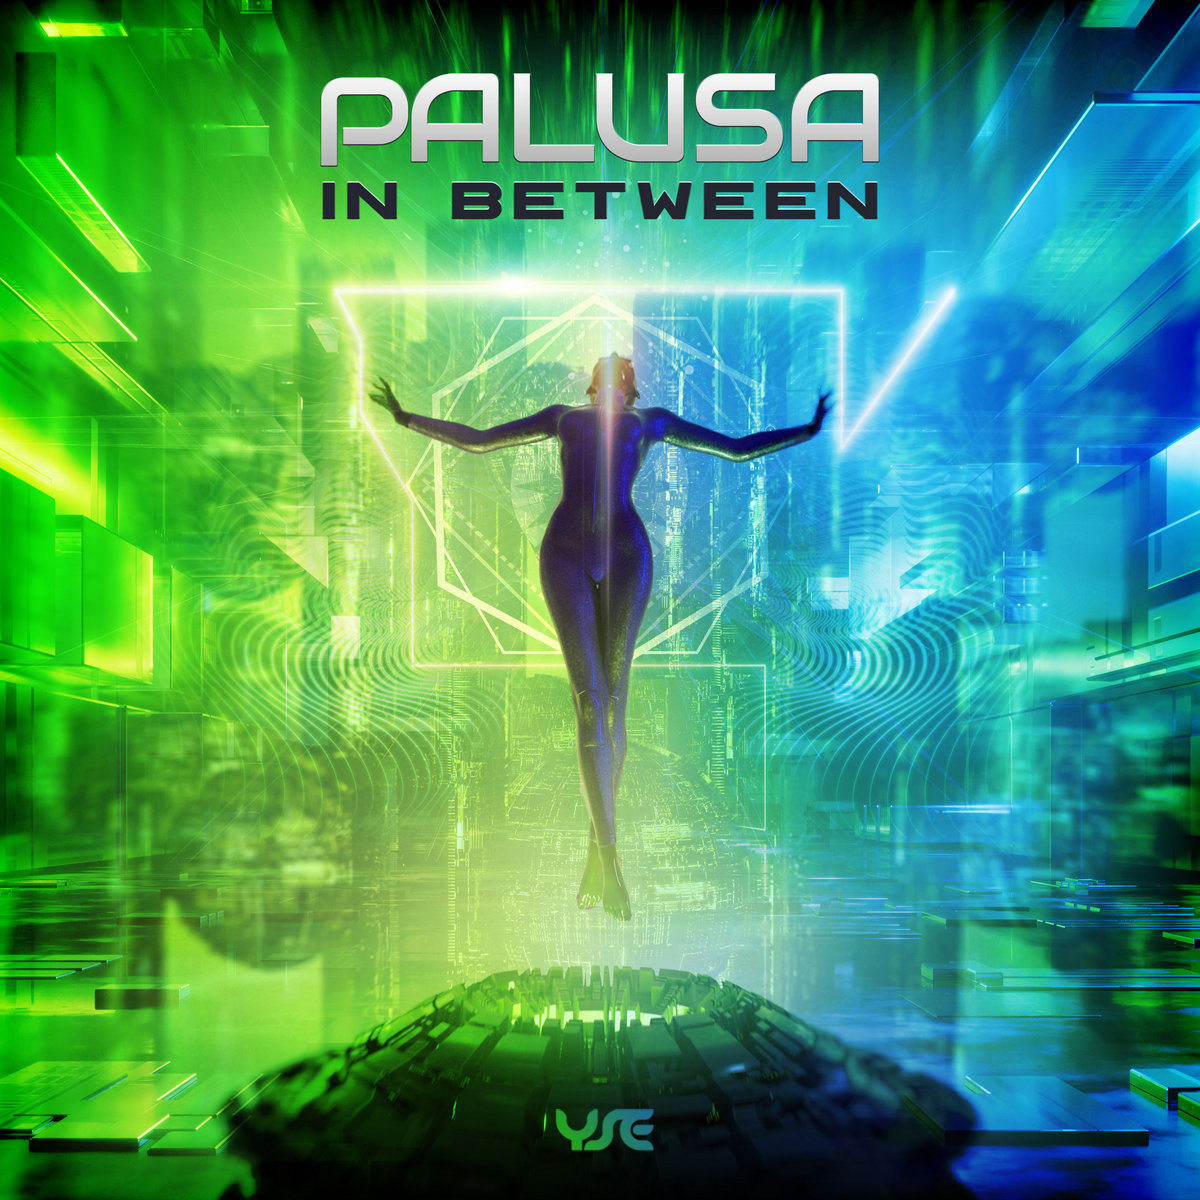 Palusa - Euphoria (Original Mix), Palusa